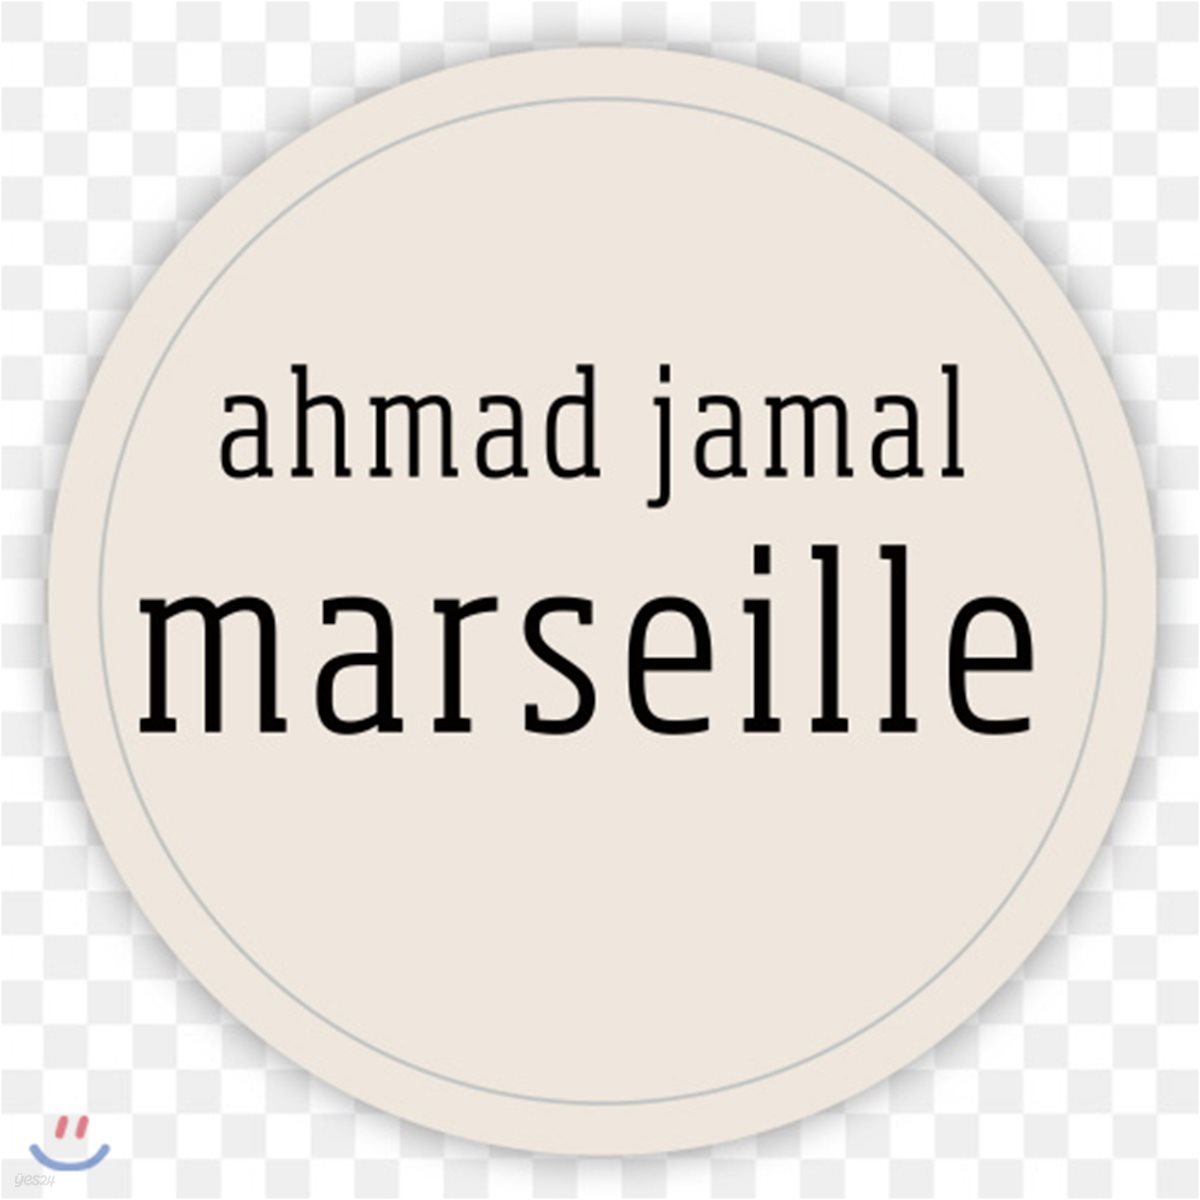 Ahmad Jamal (아마드 자말) - Marseille